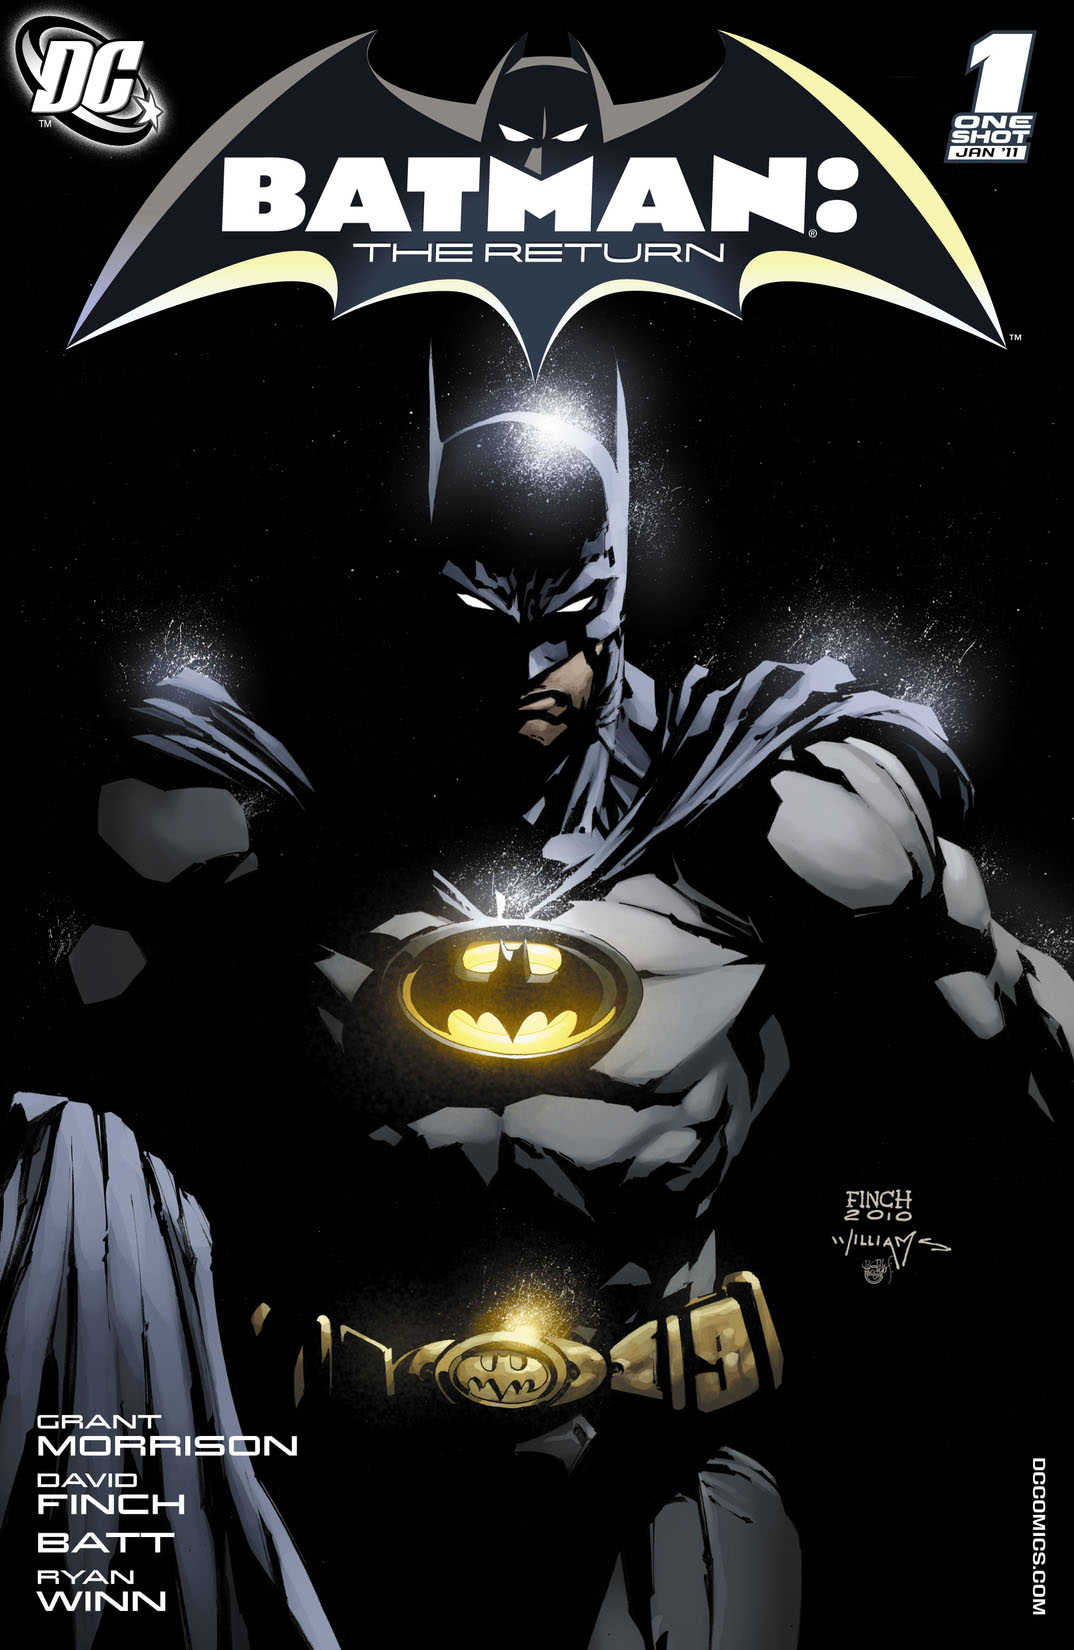 Batman: The Return #1 preview images